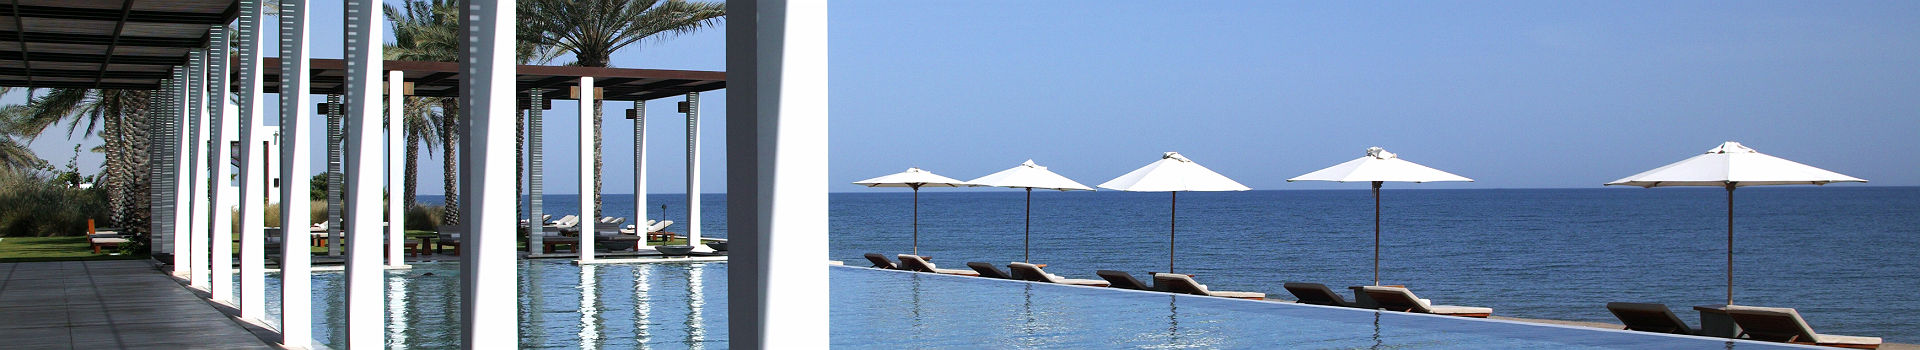 Hôtel Chedi Muscat - Espace piscine avec des chaises longues